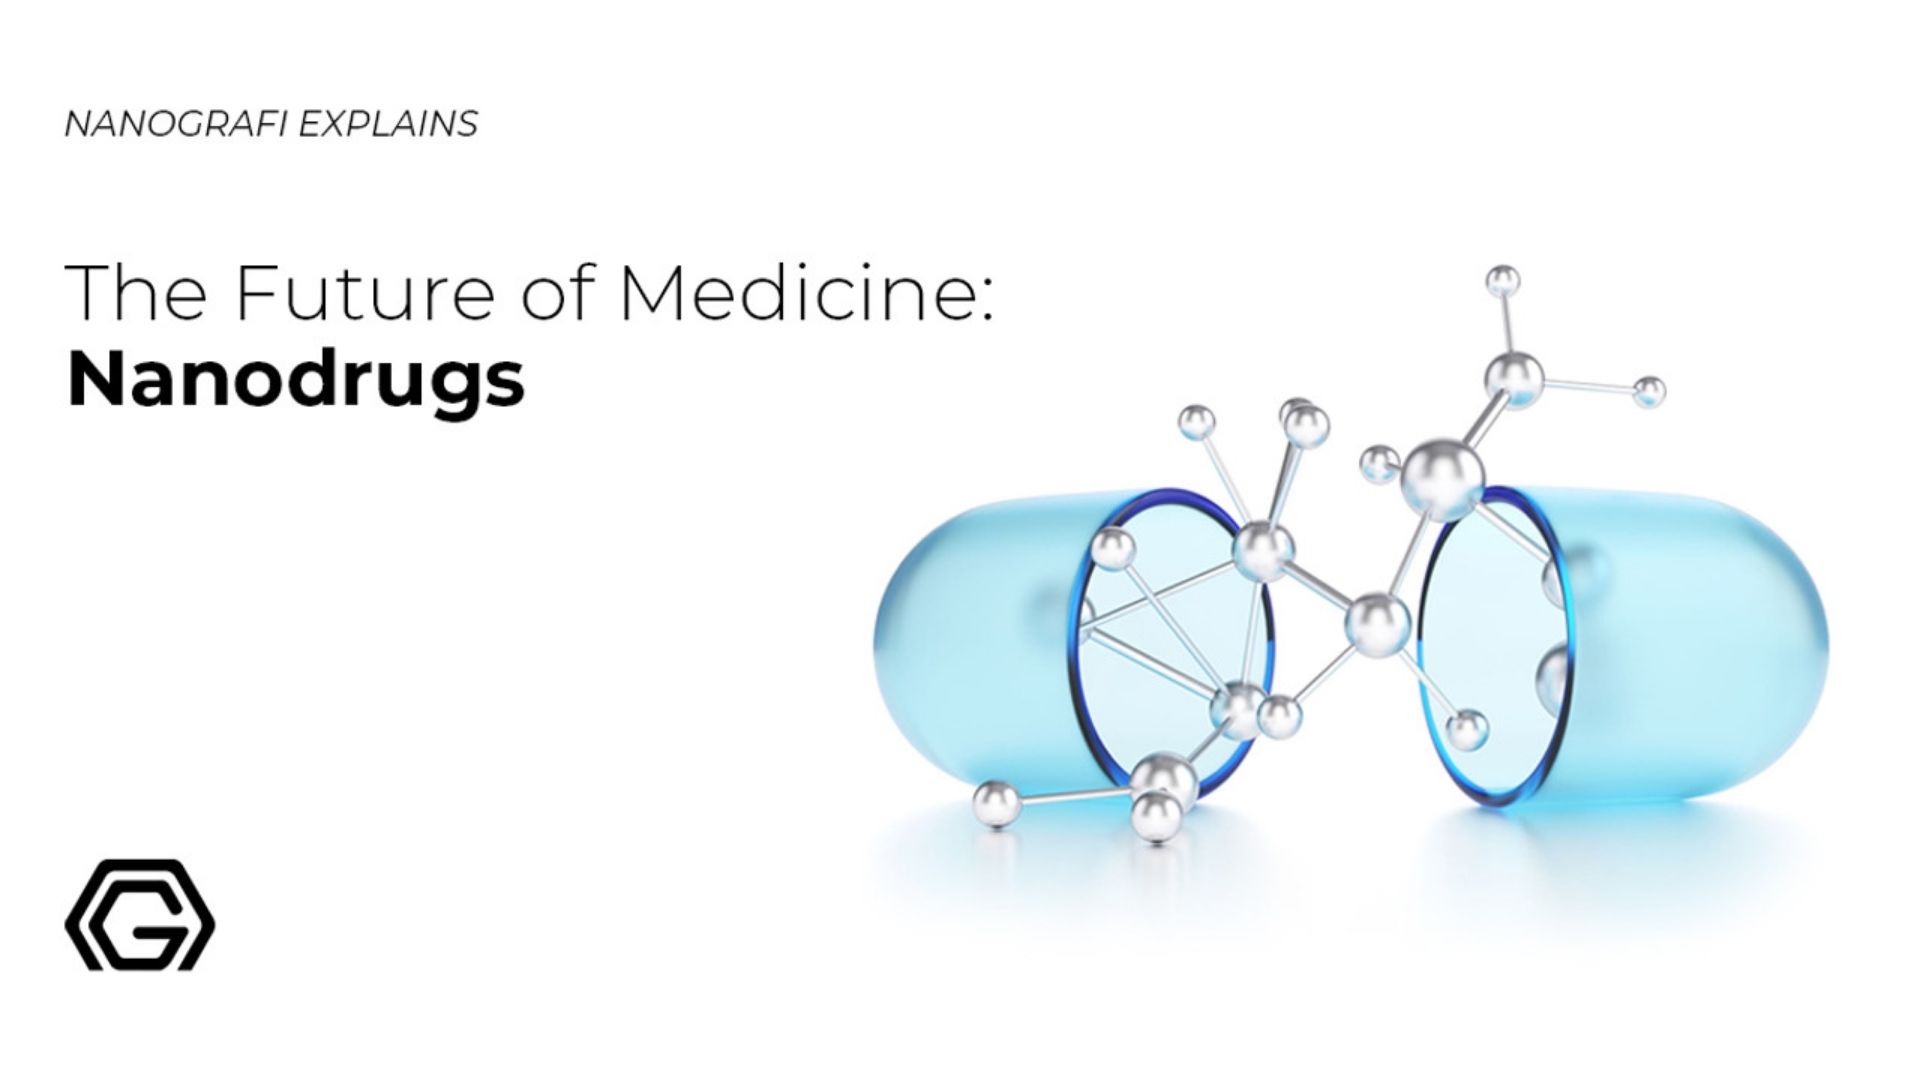 The future of medicine: nanodrugs